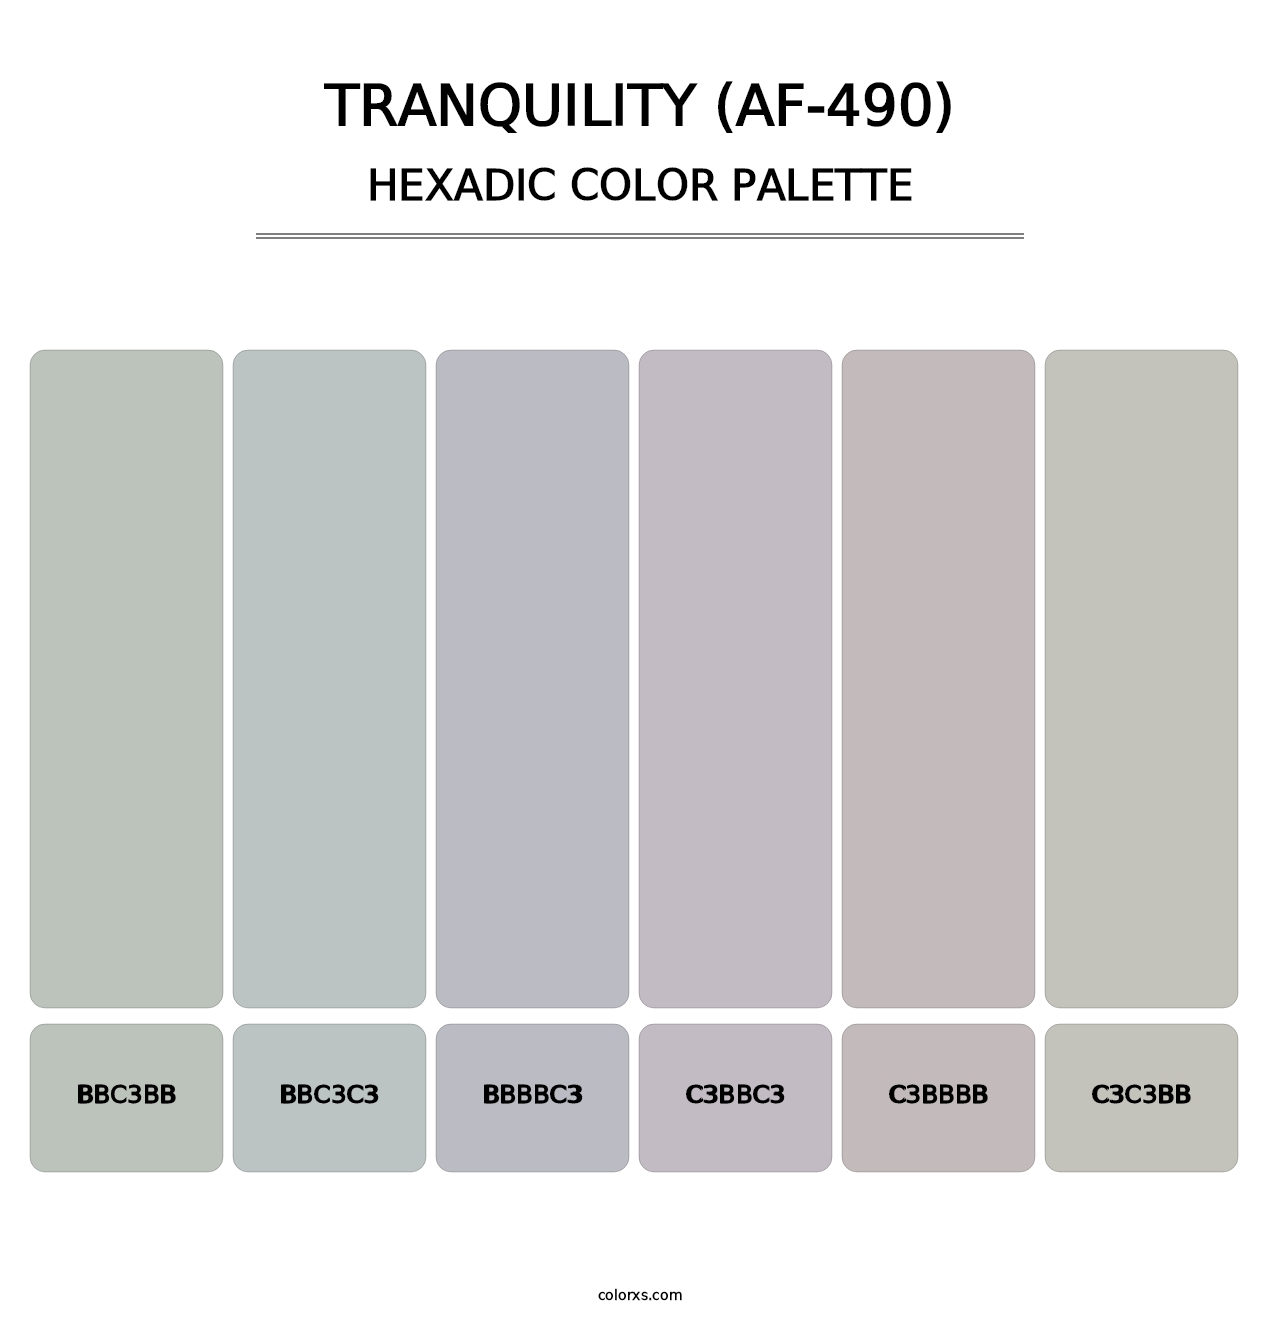 Tranquility (AF-490) - Hexadic Color Palette